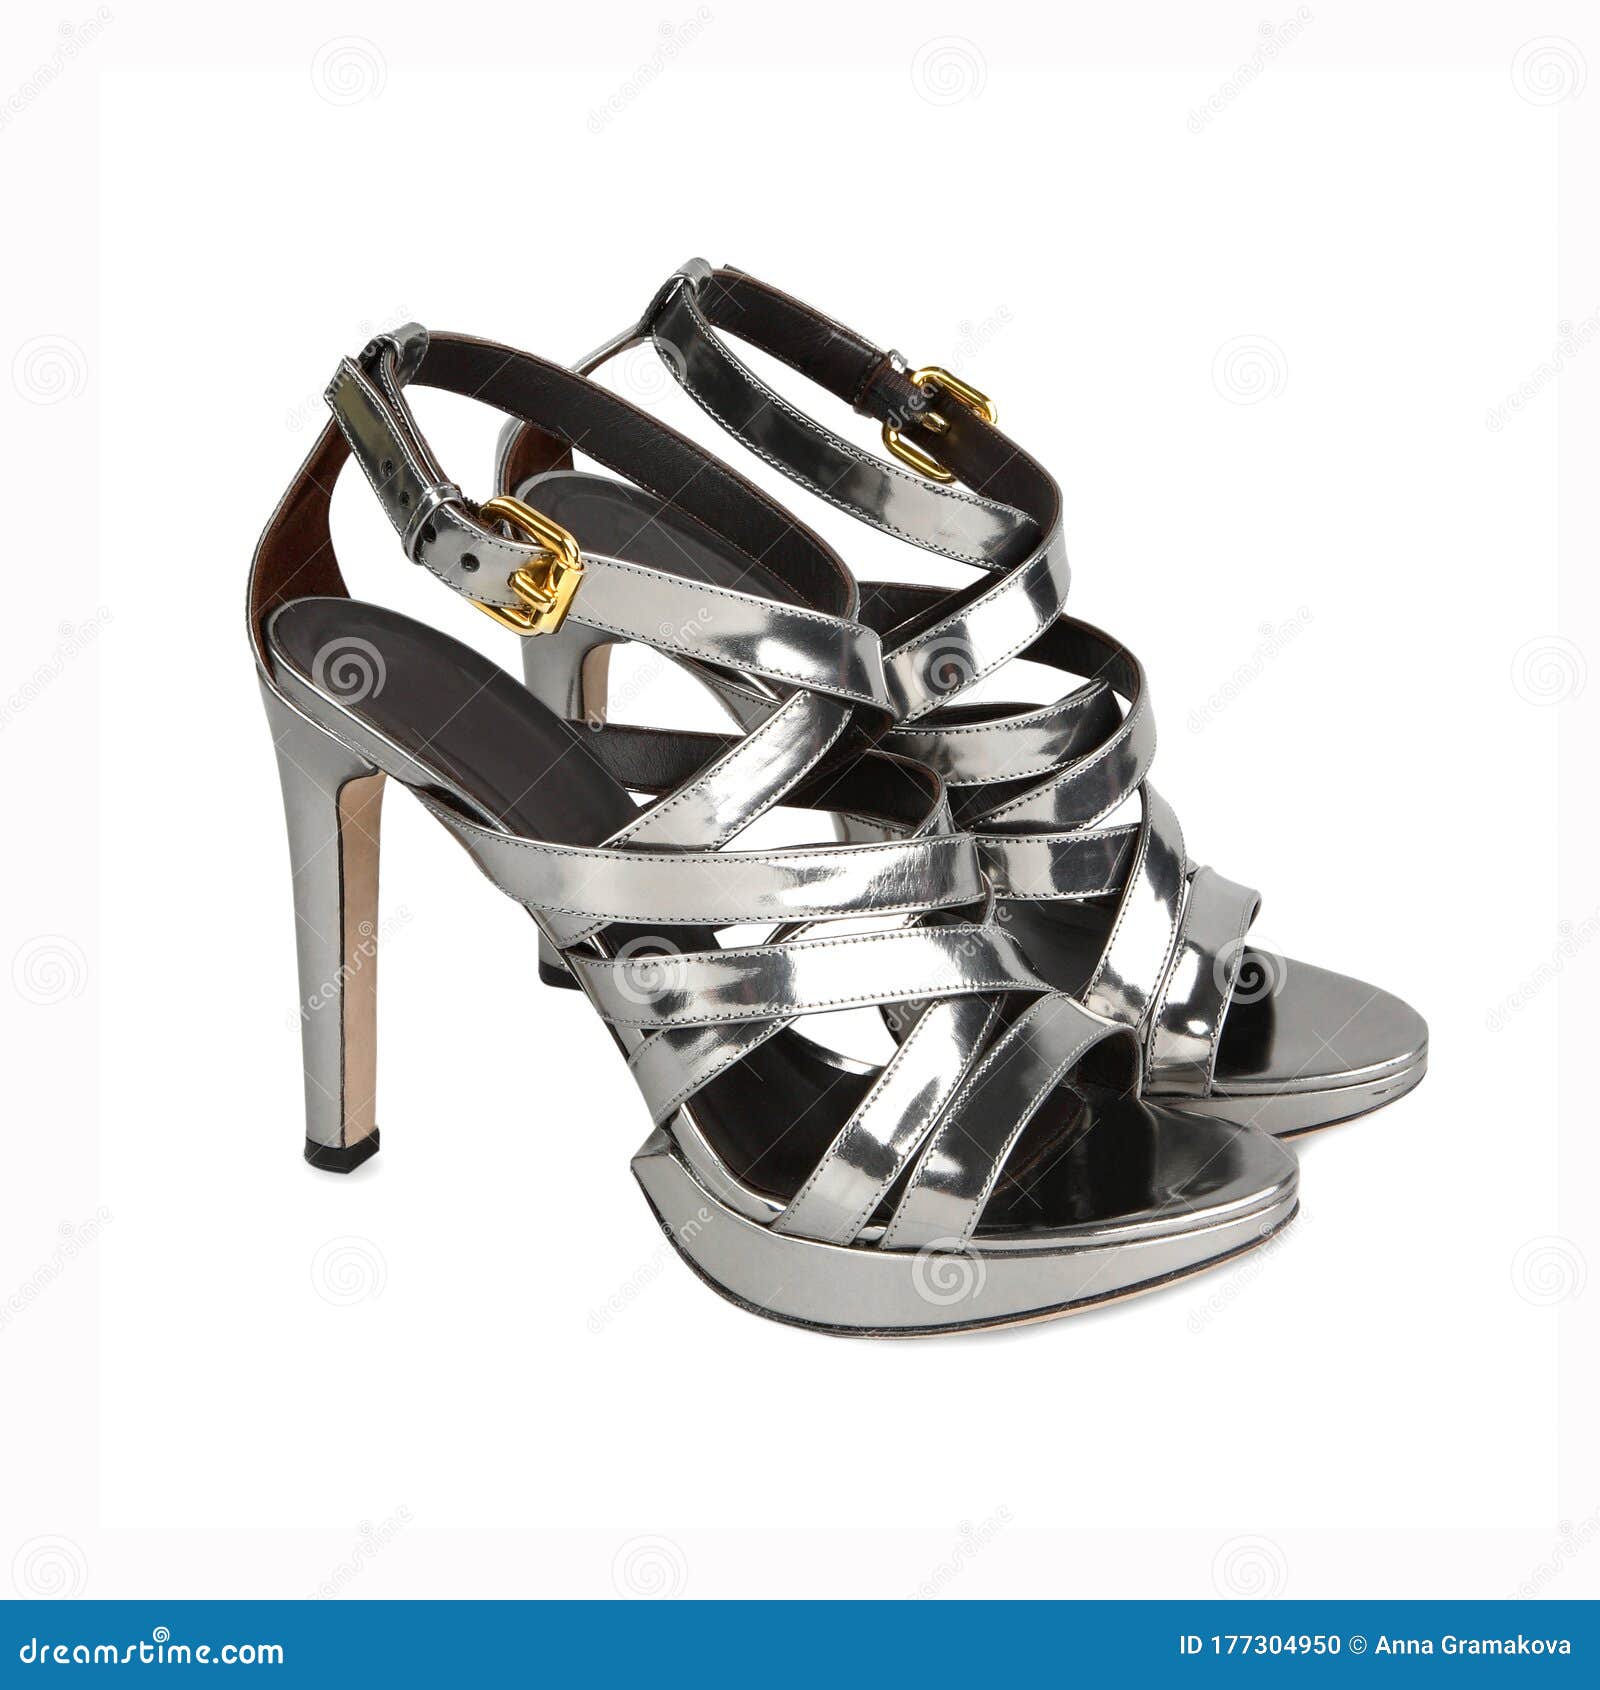 Stylish Summer High Heels Female Grey Leather Shoes Stock Photo - Image ...